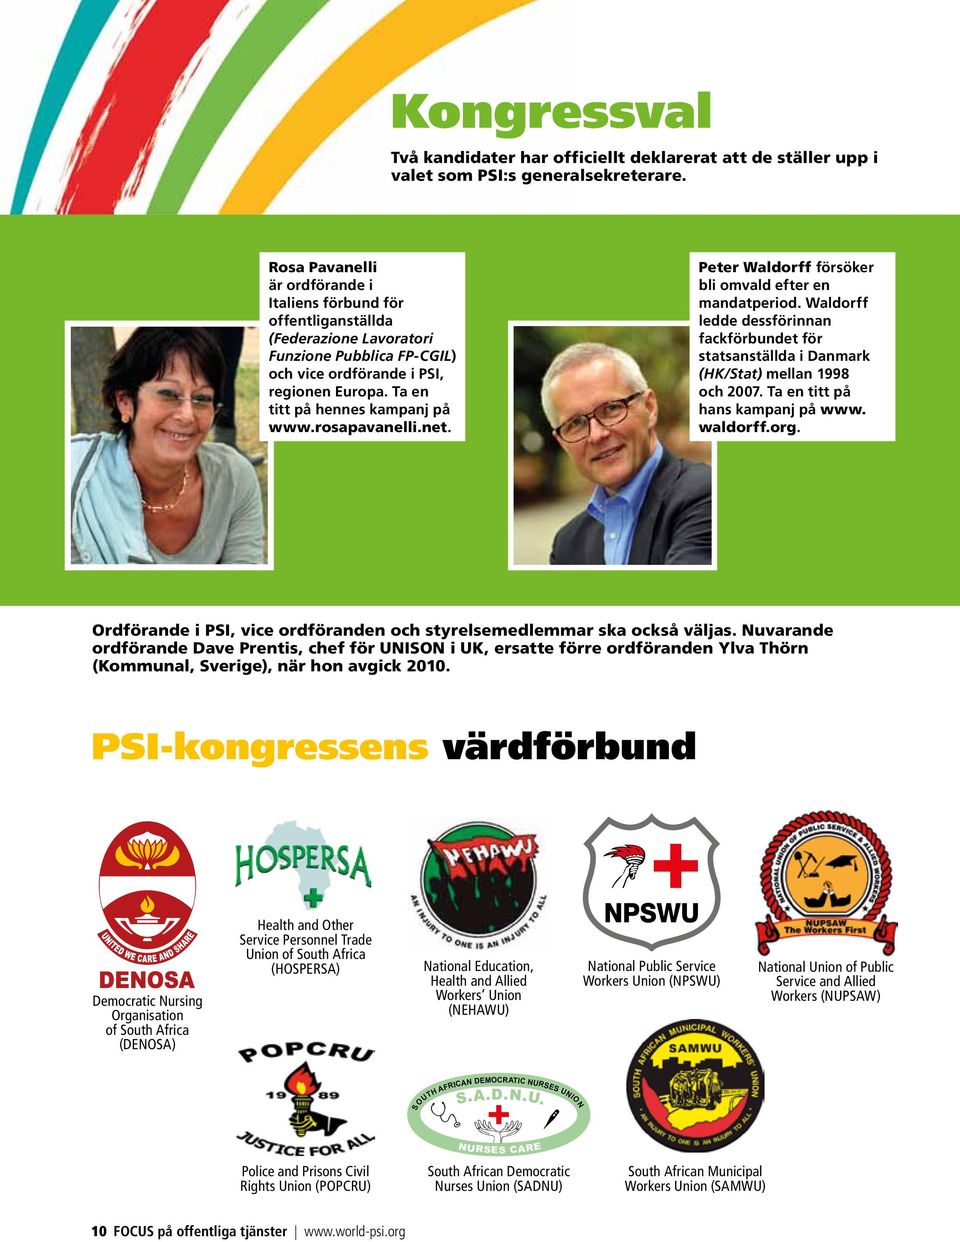 Ta en titt på hennes kampanj på www.rosapavanelli.net. Peter Waldorff försöker bli omvald efter en mandatperiod.